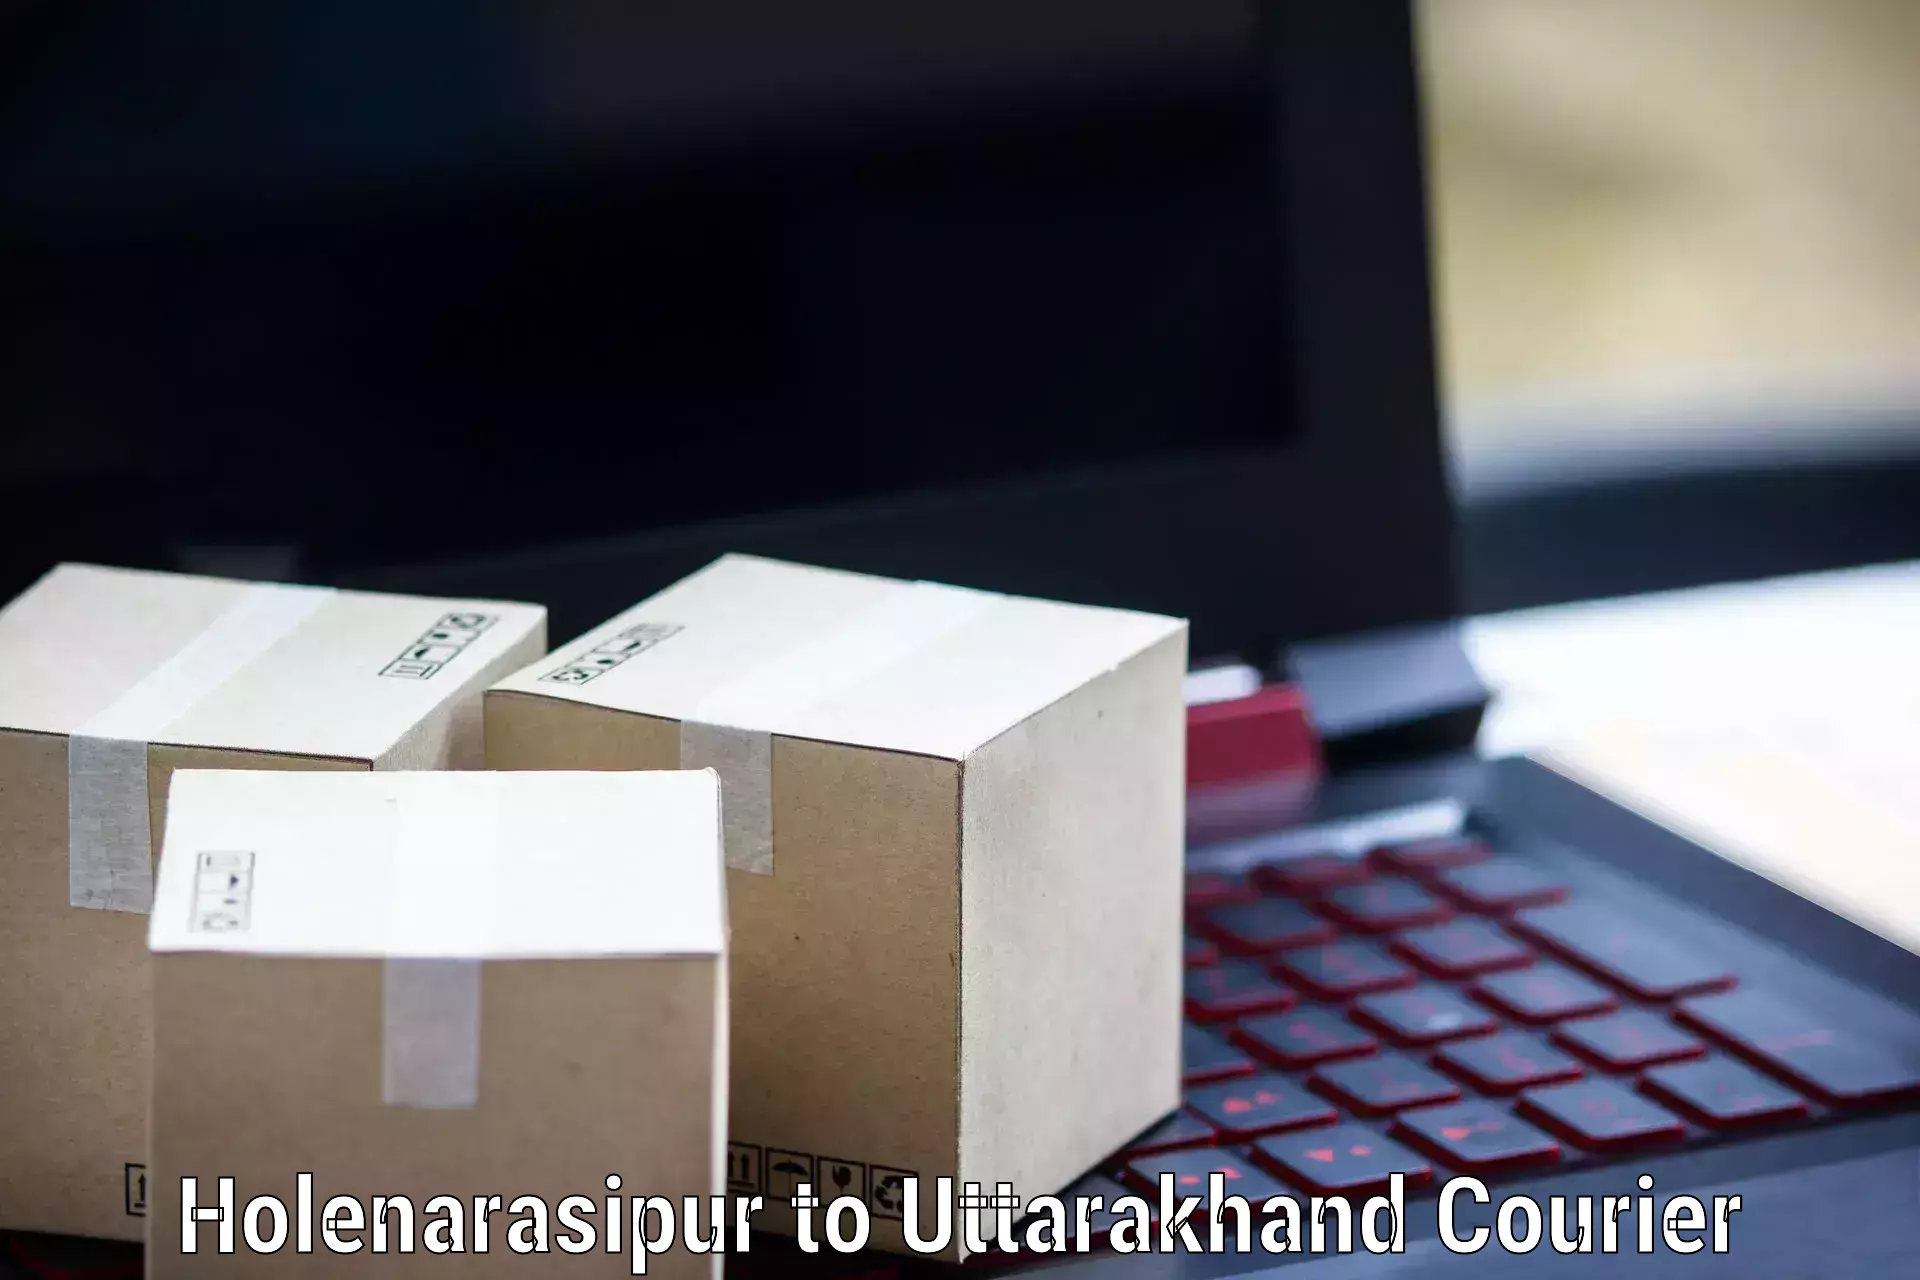 Bulk courier orders Holenarasipur to Kotdwara